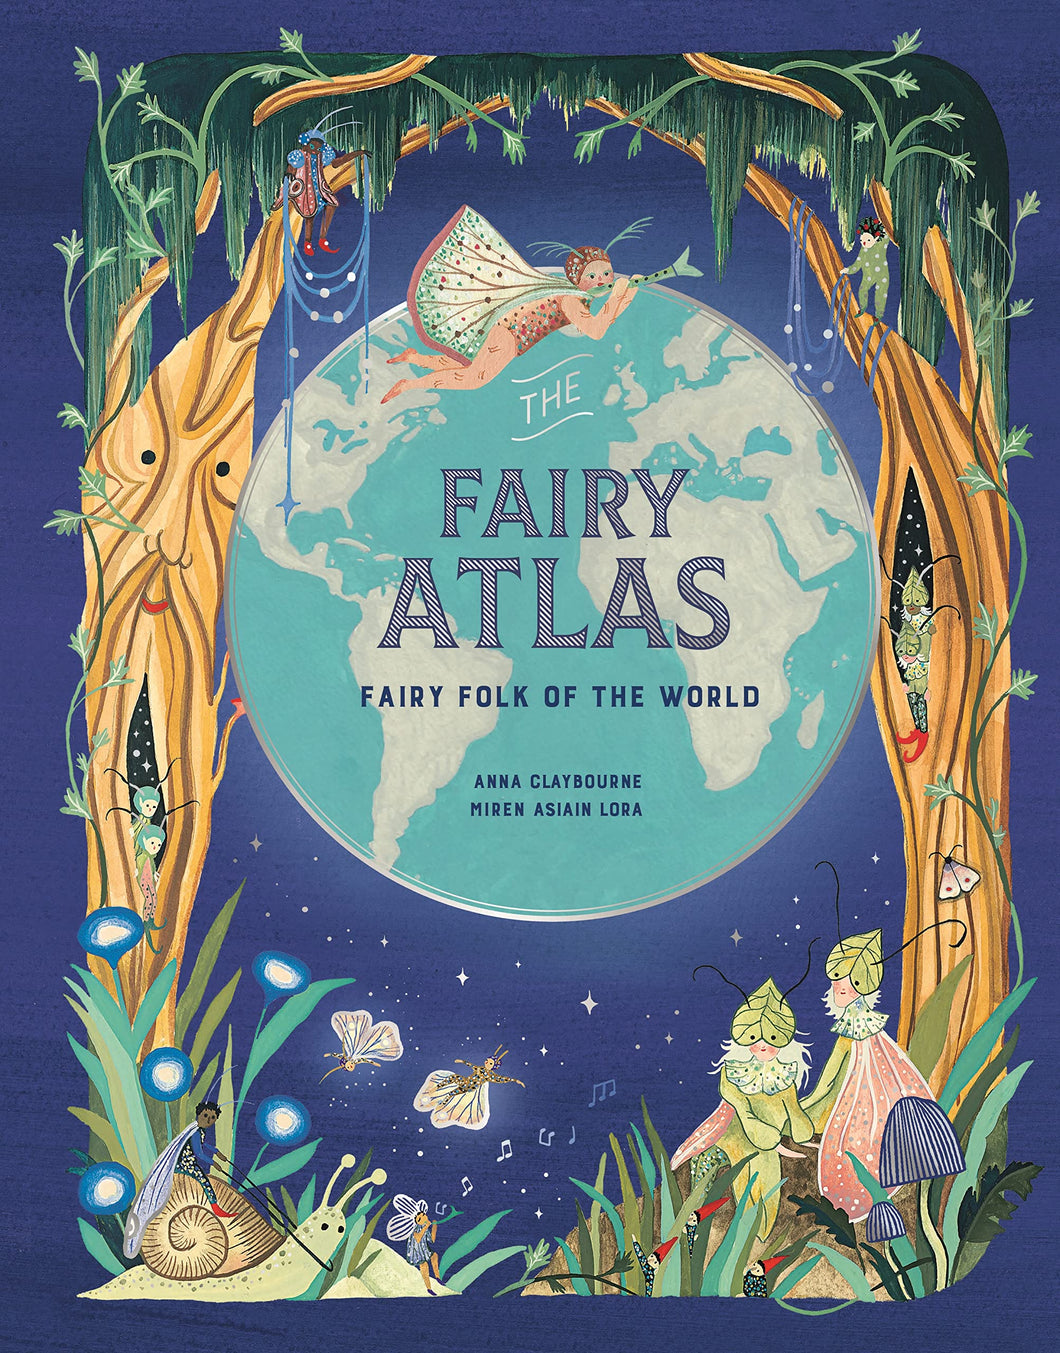 The Fairy Atlas: Fairy Folk of the World [Anna Claybourne]